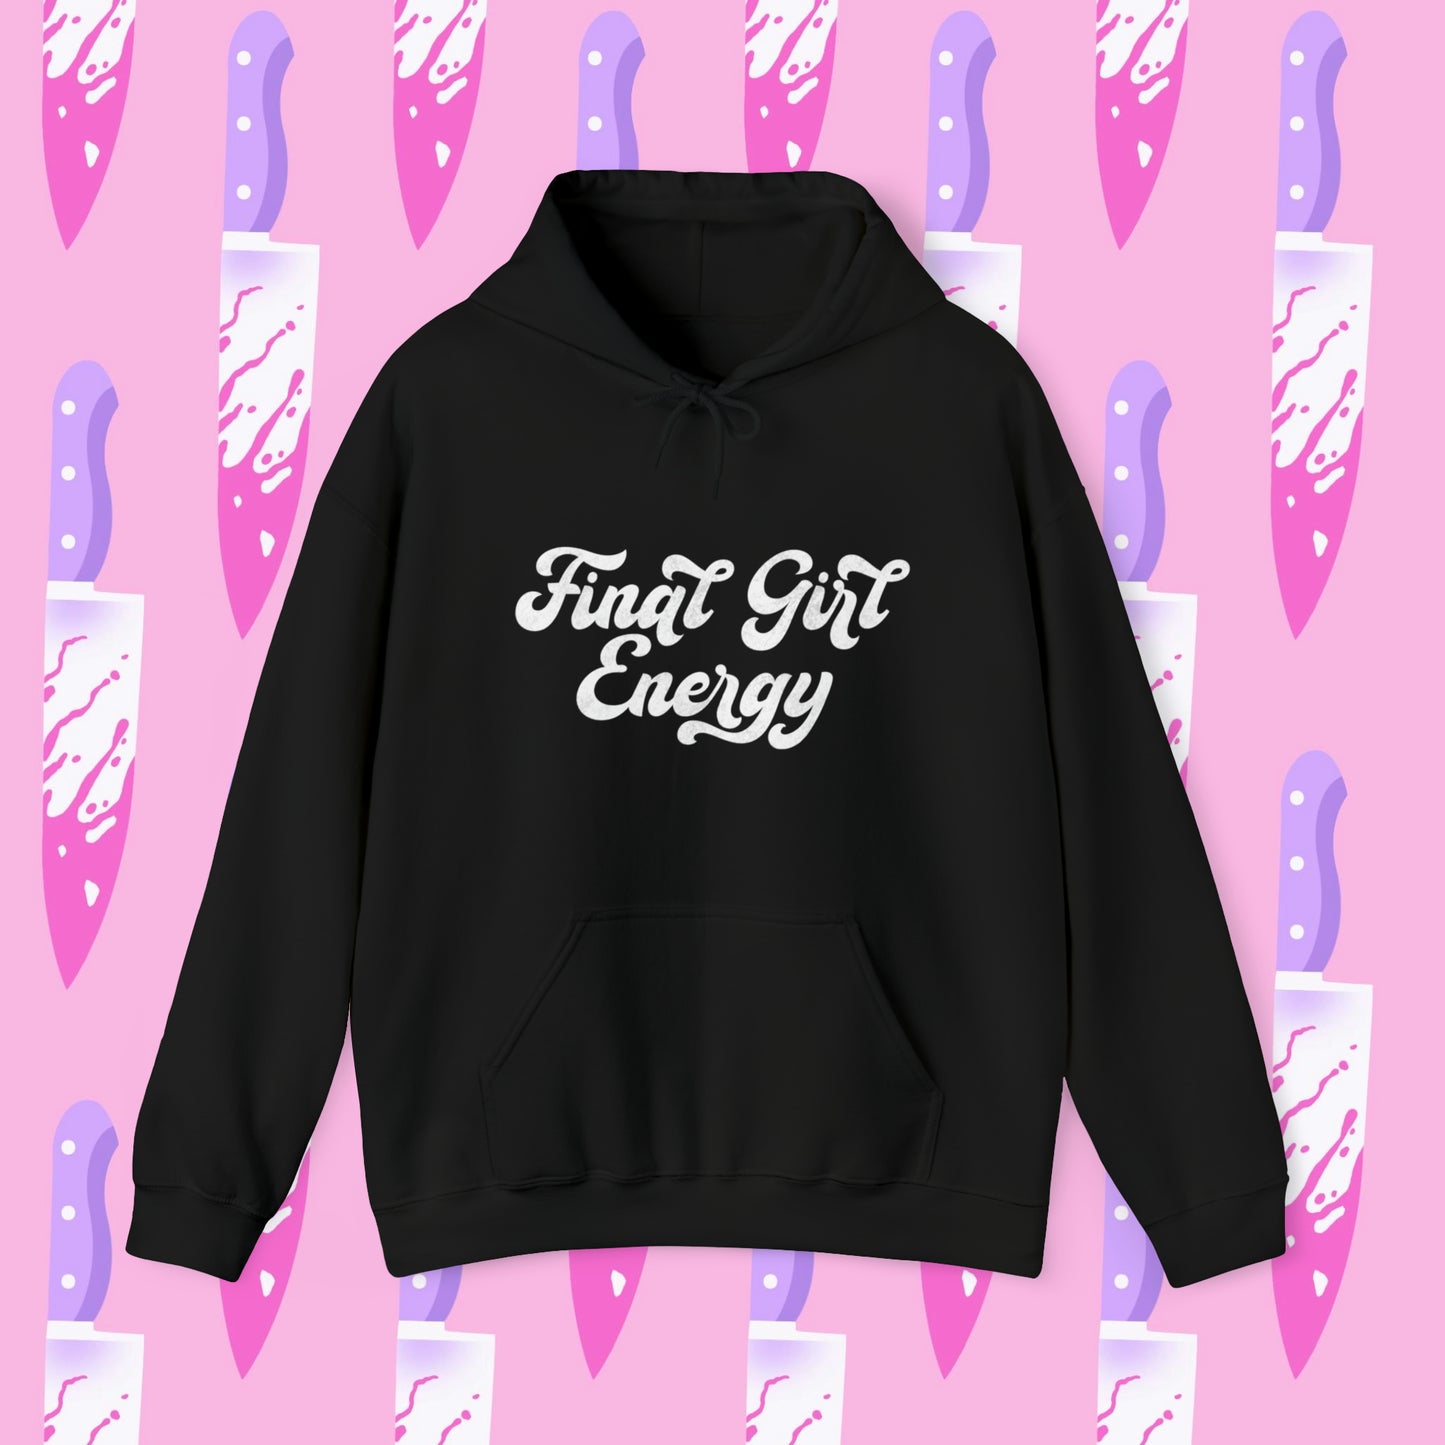 Final Girl Energy Hooded Sweatshirt